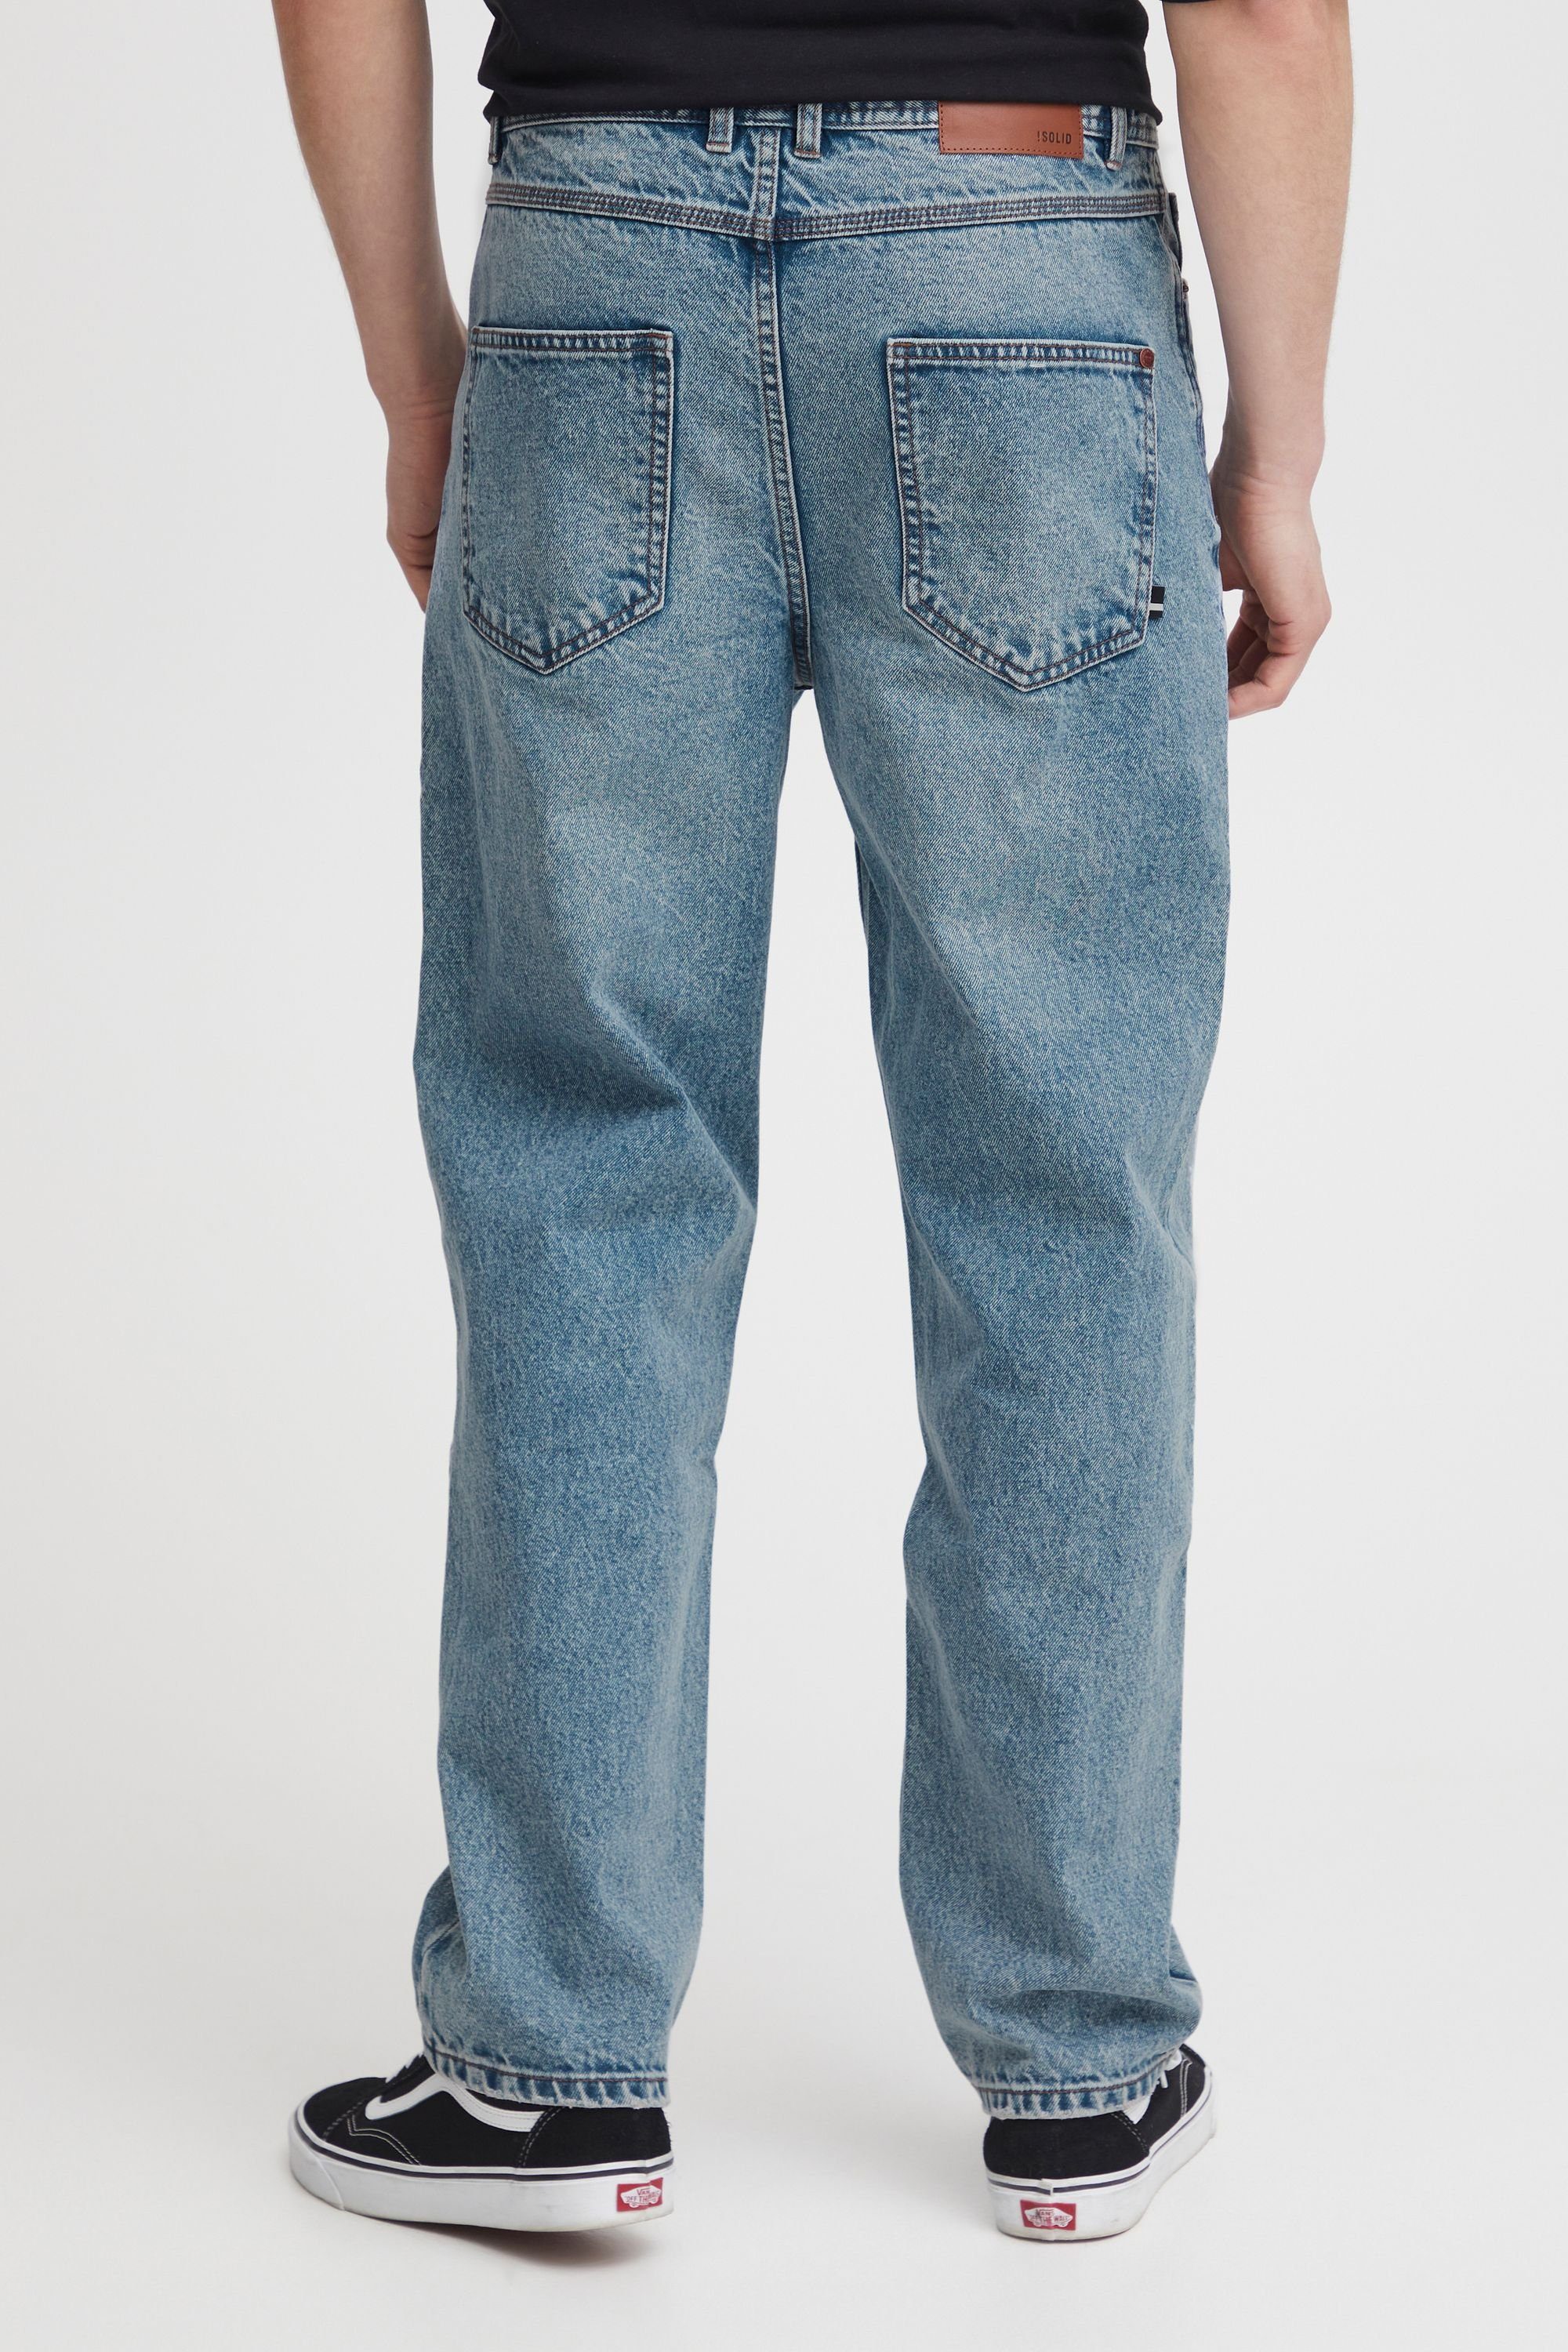 SDHoffmann Middle (700030) !Solid Vintage Blue 5-Pocket-Jeans Denim